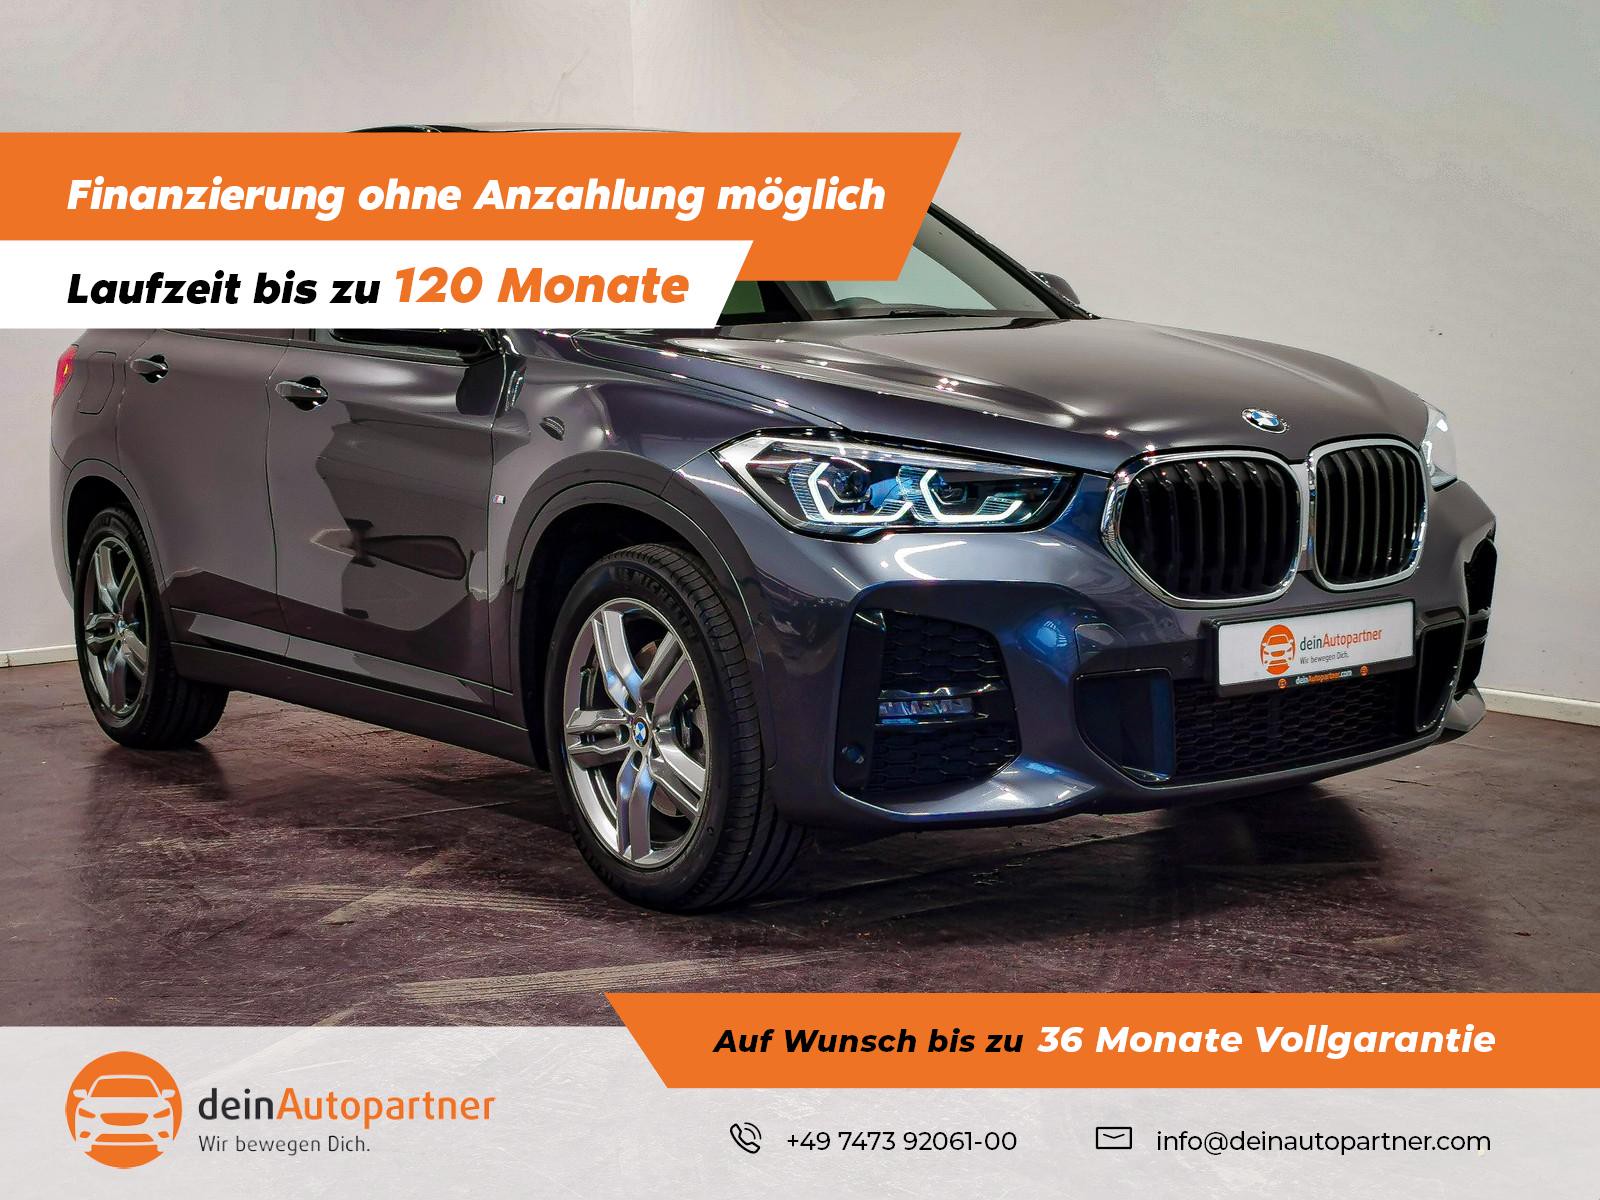 BMW X1 20d M Sport gebraucht kaufen in Mössingen Preis 34900 eur - Int.Nr.:  1154 VERKAUFT